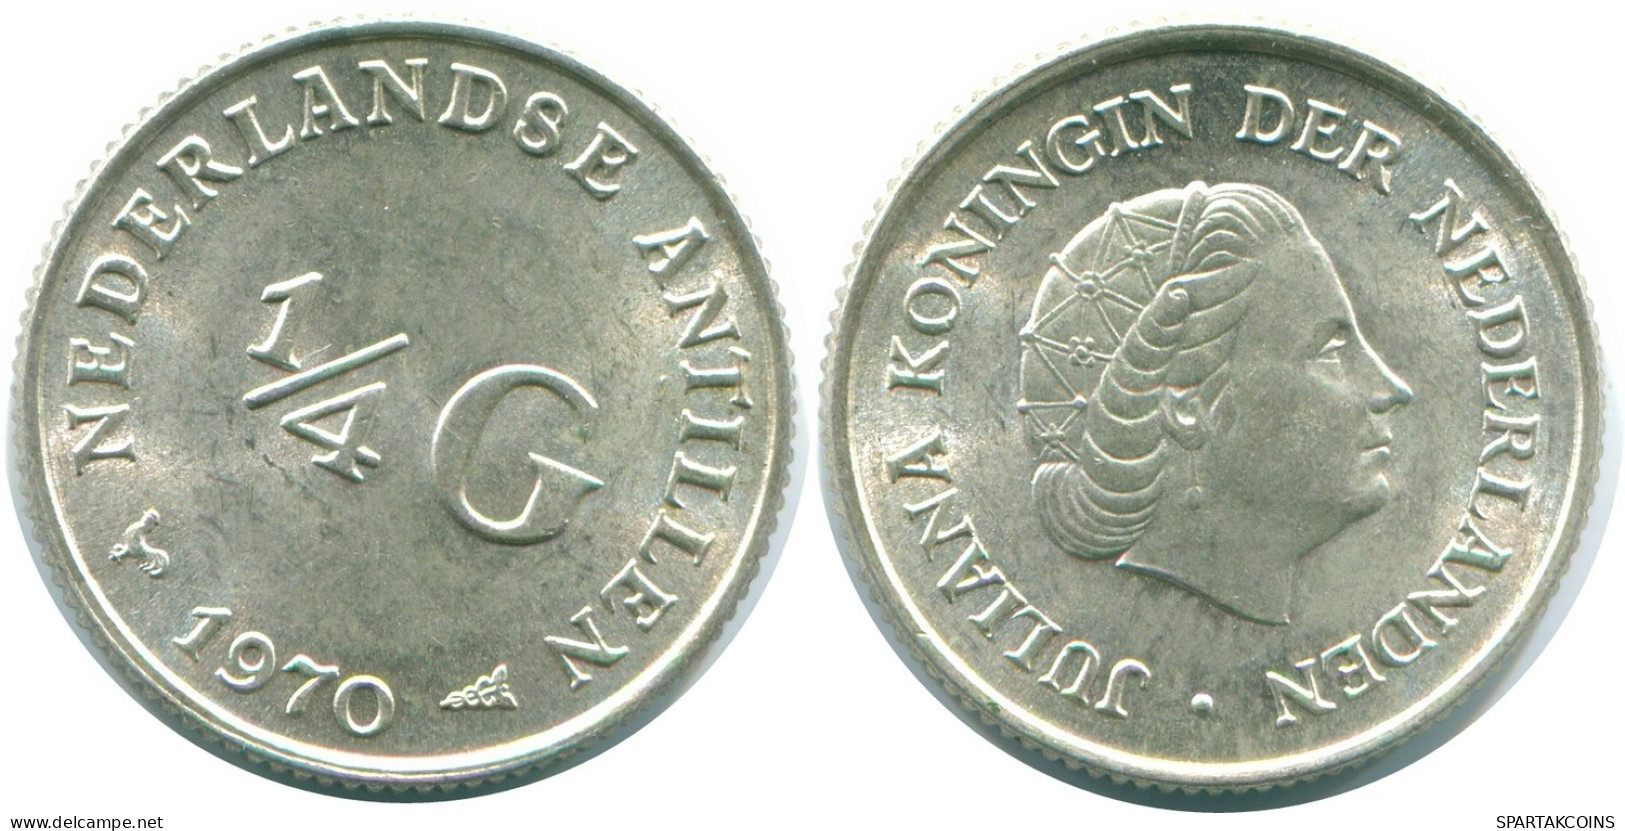 1/4 GULDEN 1970 NIEDERLÄNDISCHE ANTILLEN SILBER Koloniale Münze #NL11624.4.D.A - Nederlandse Antillen